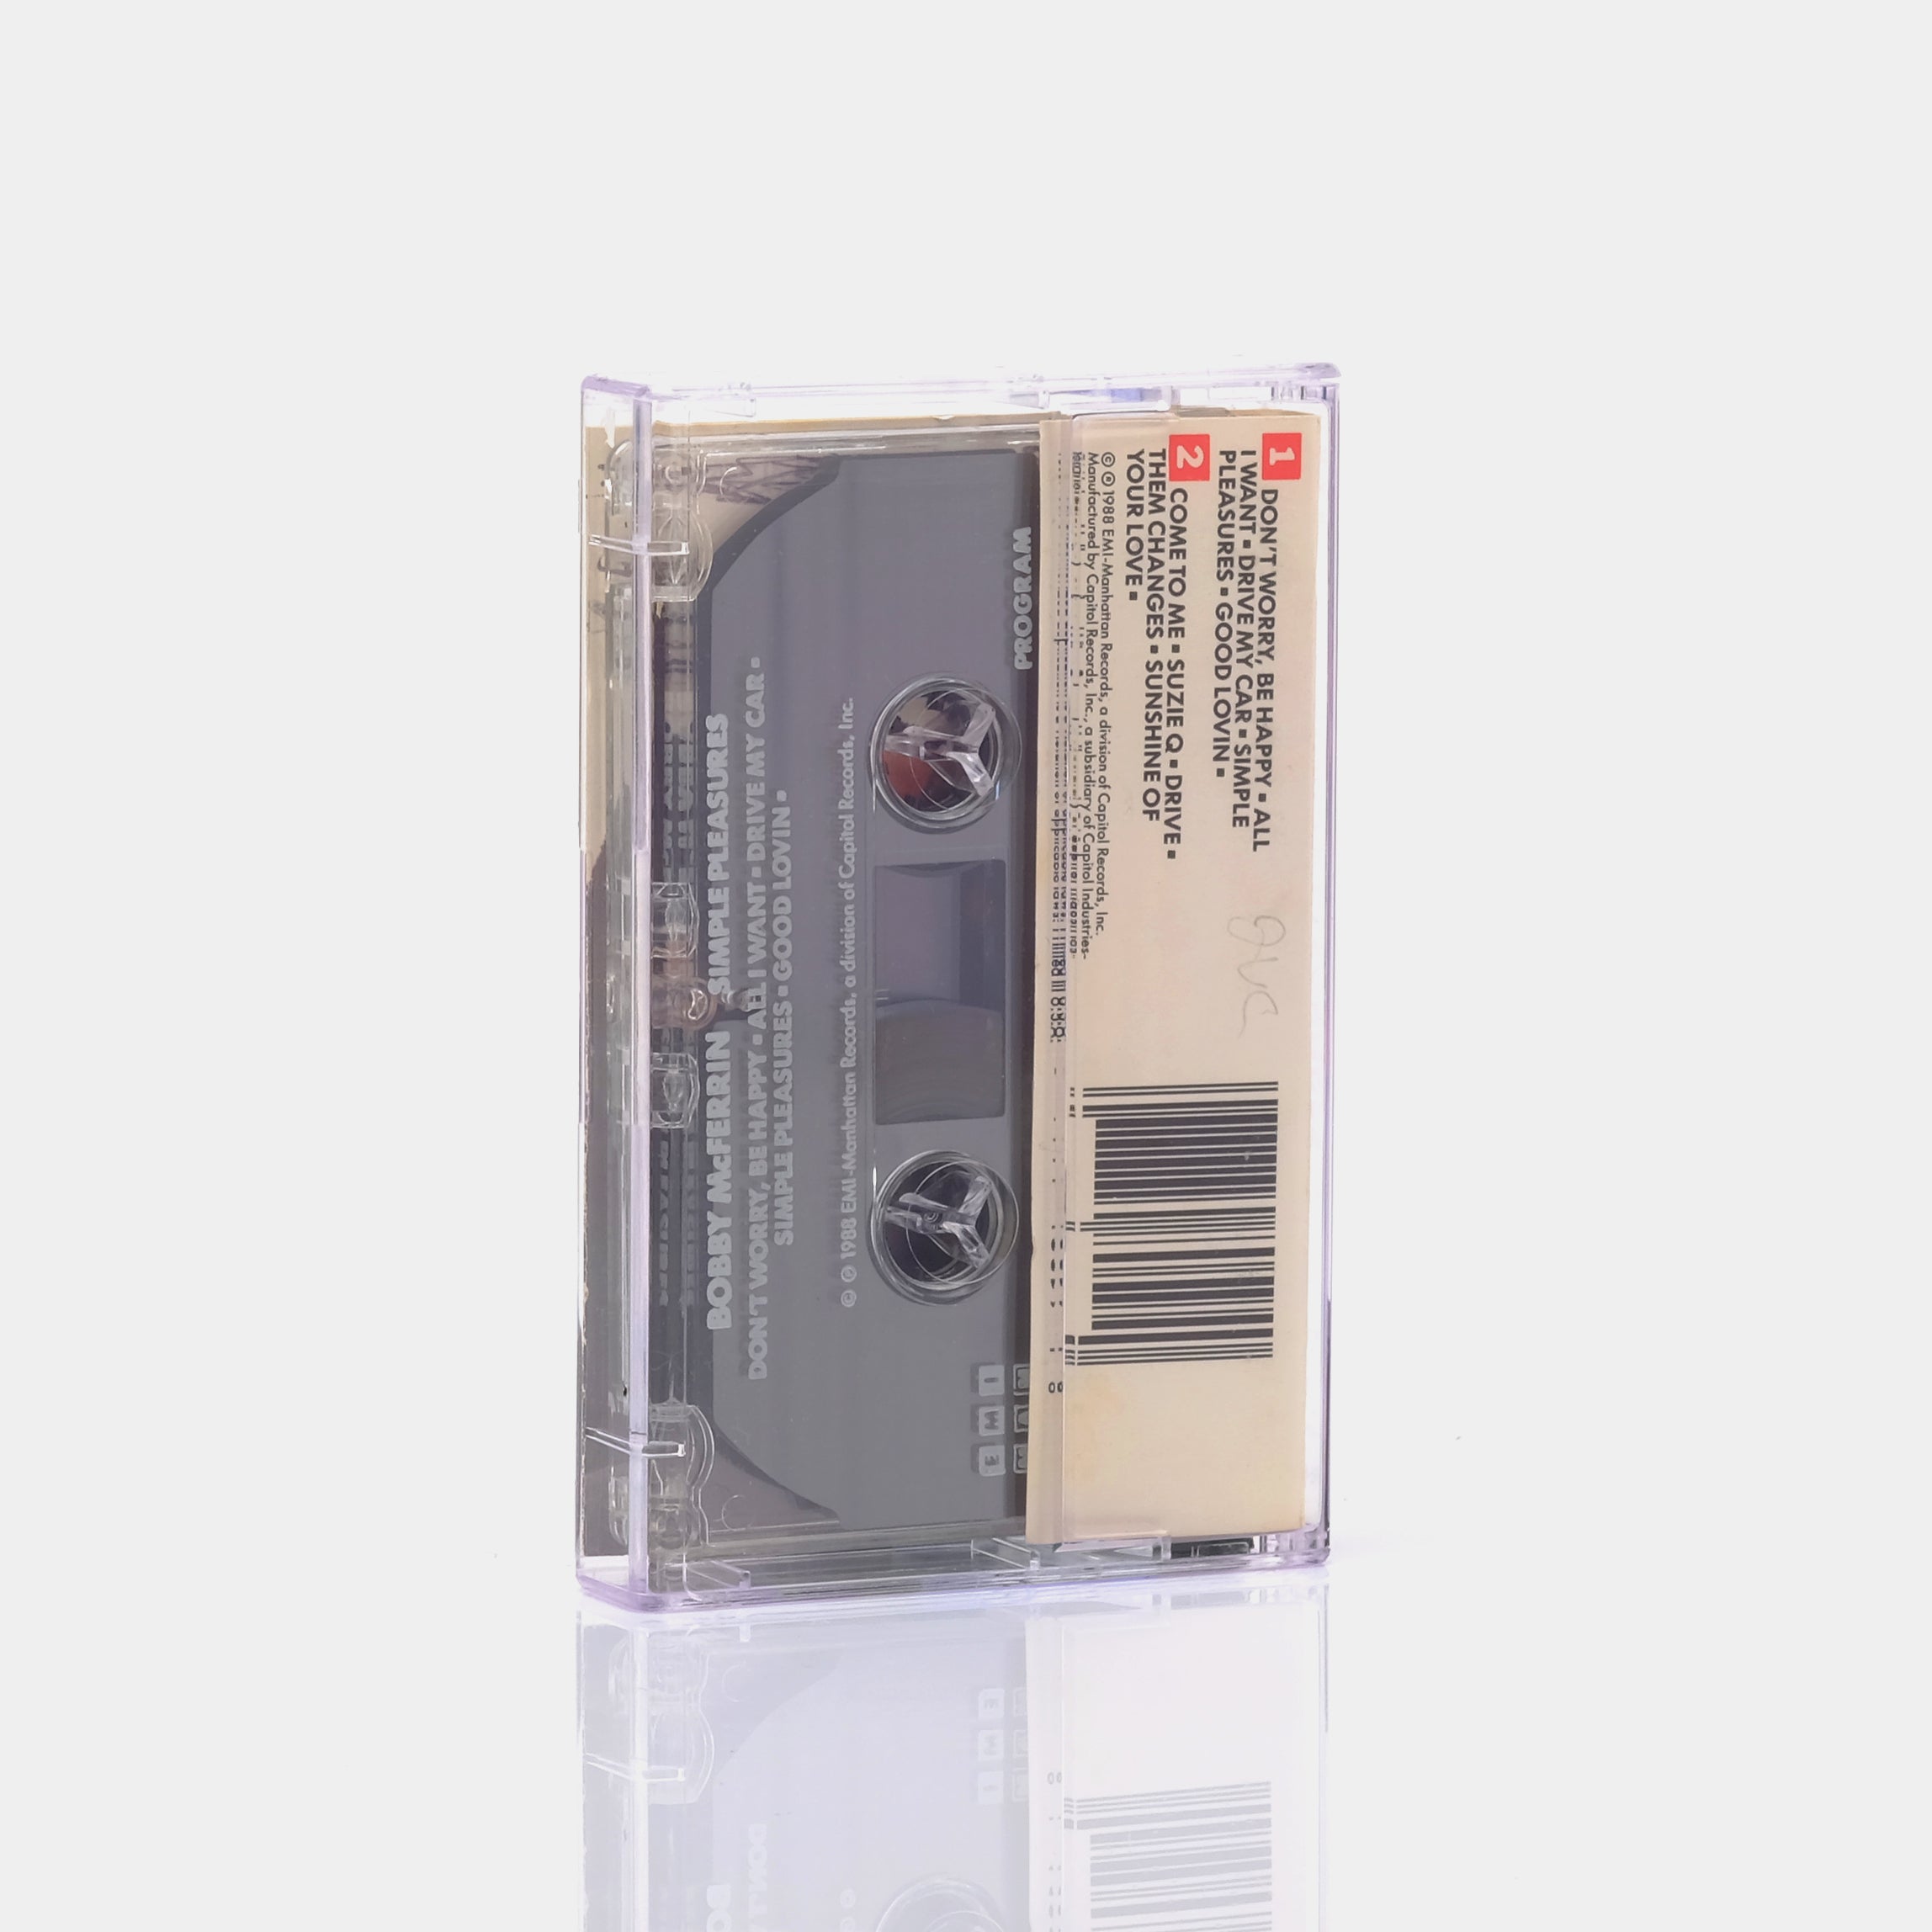 Bobby McFerrin - Simple Pleasures Cassette Tape